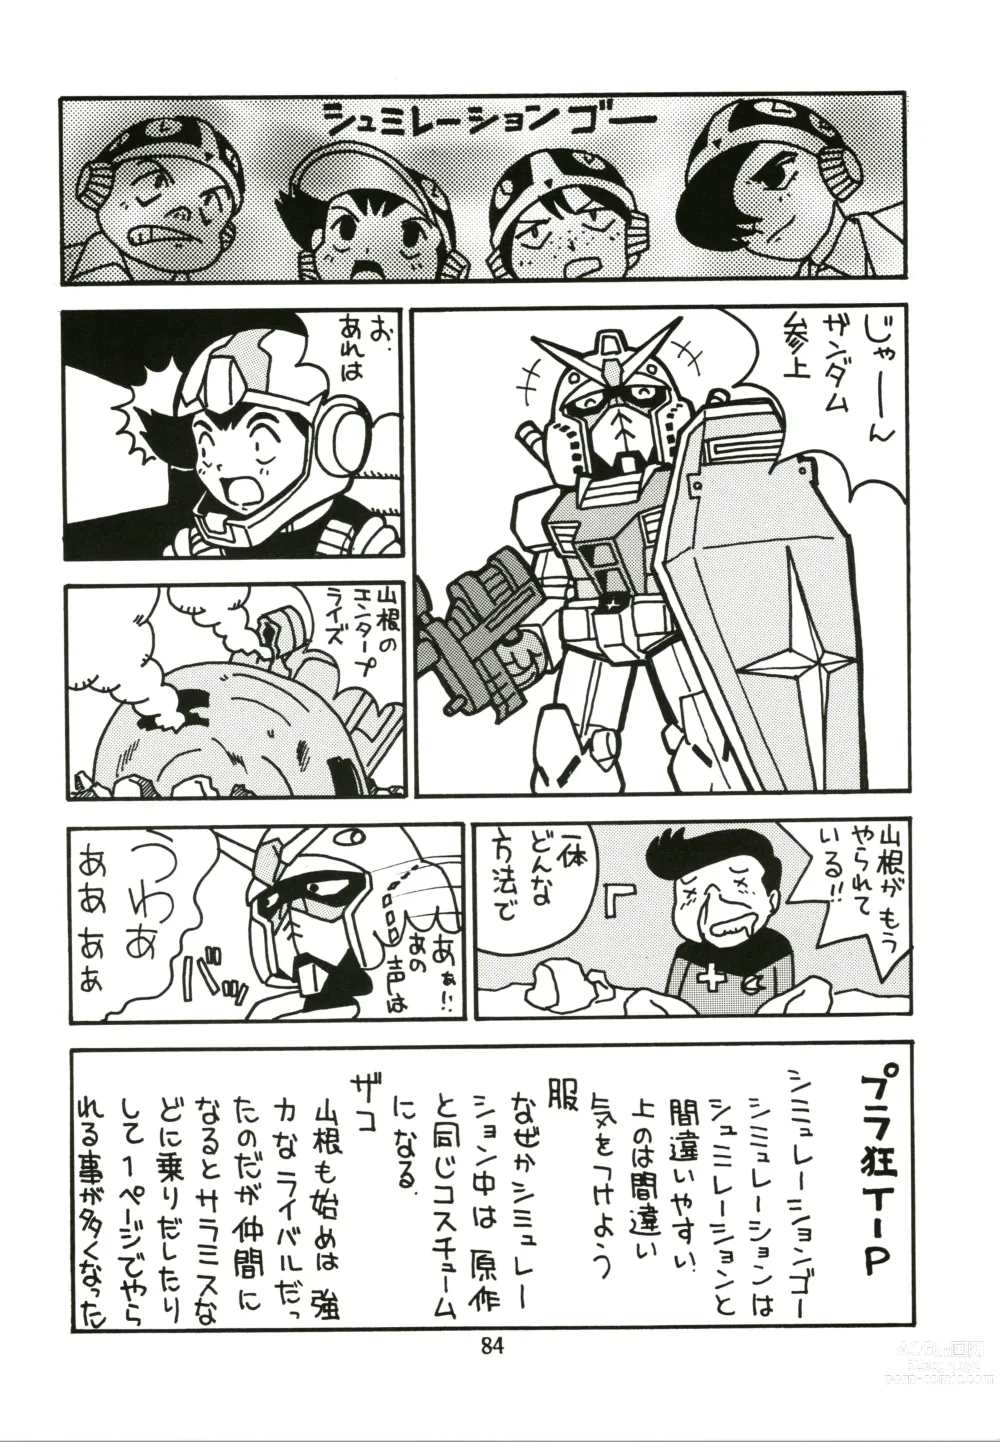 Page 84 of doujinshi Sakura Ame